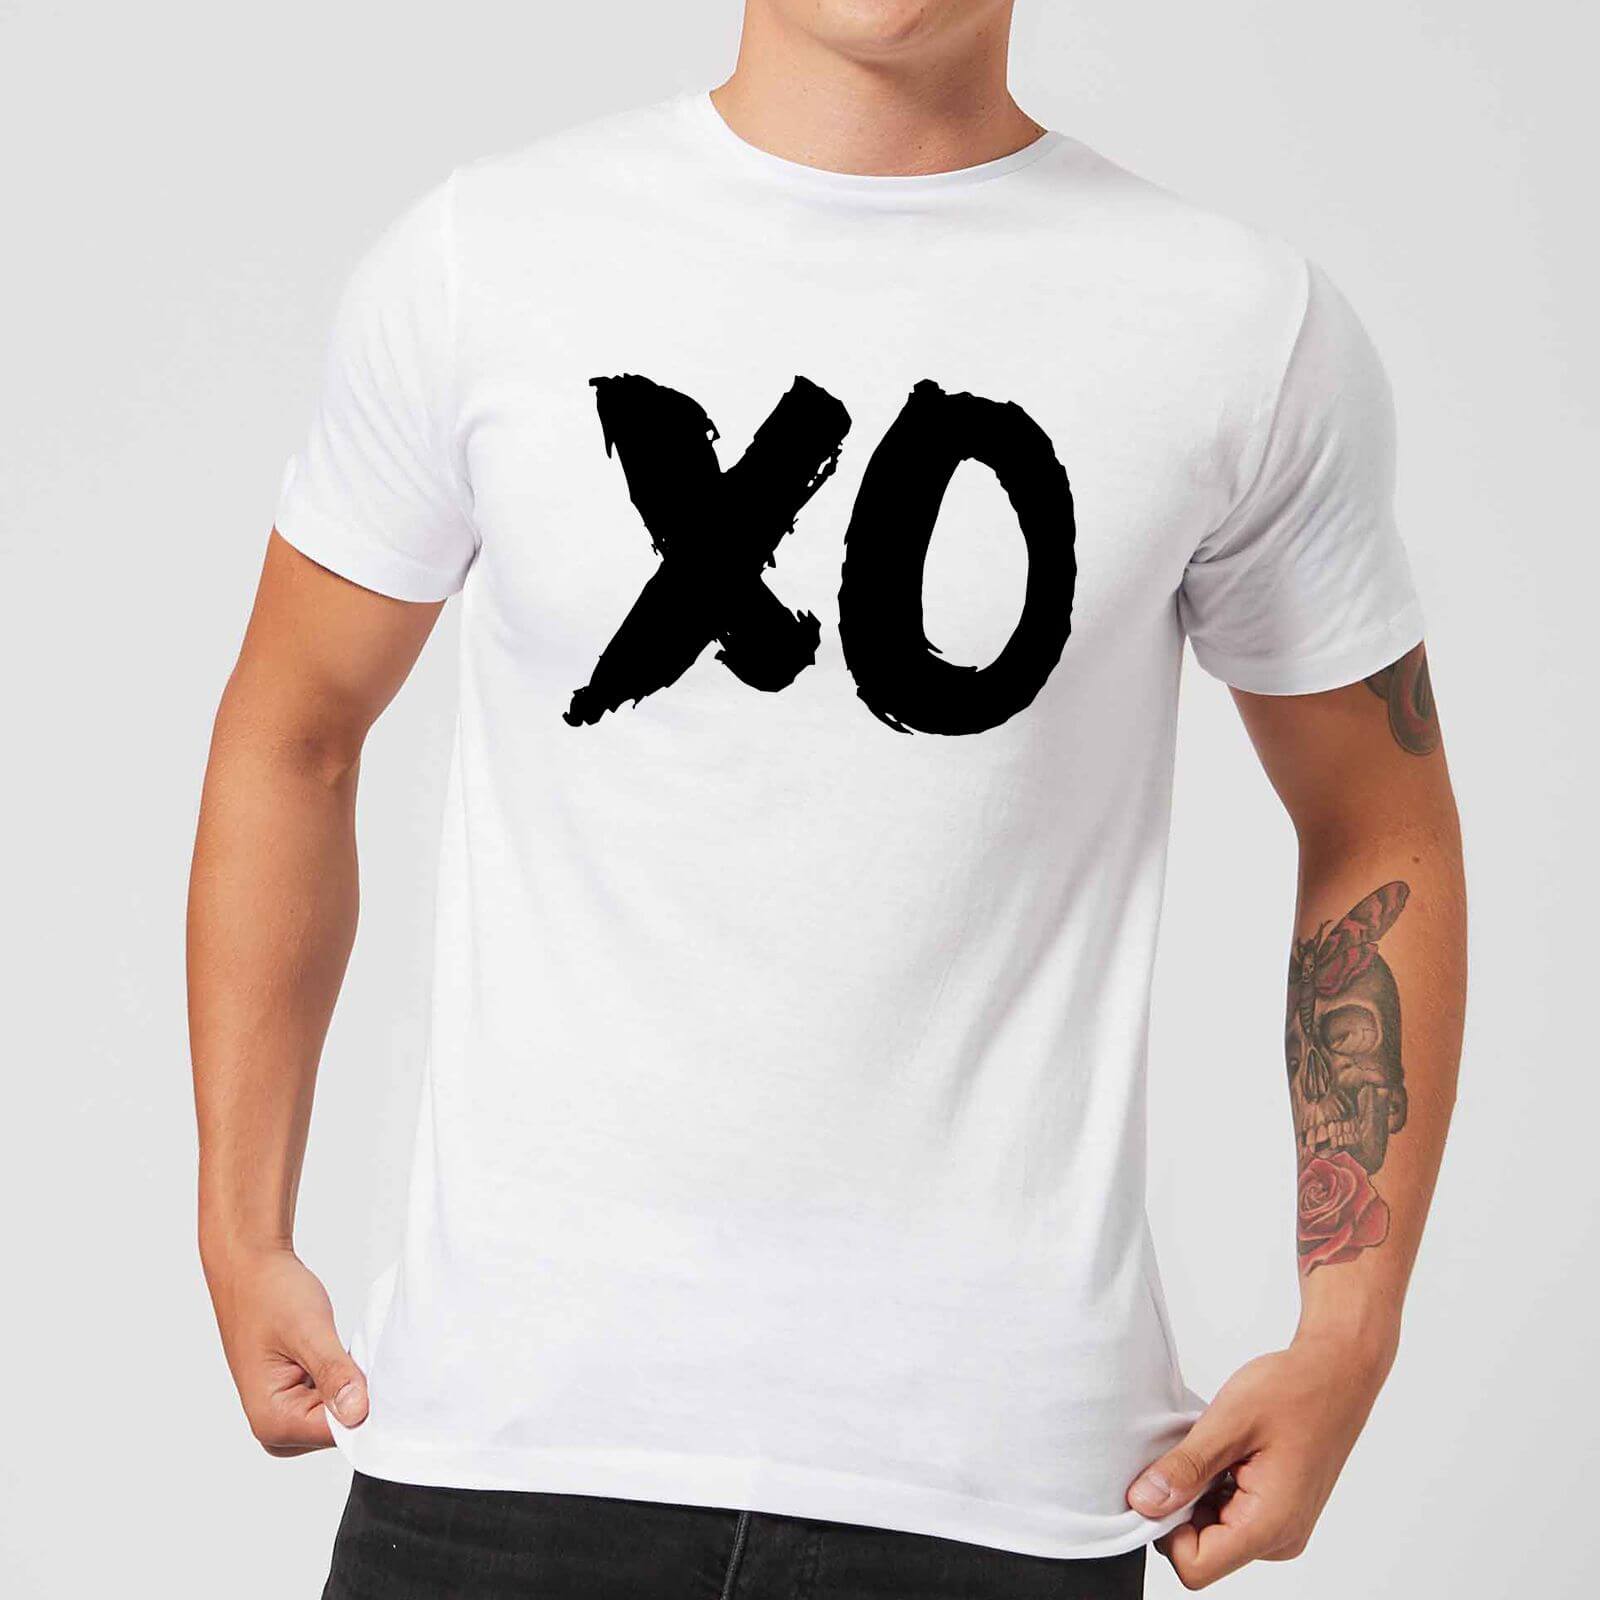 The Motivated Type XO Men's T-Shirt - White - S - White